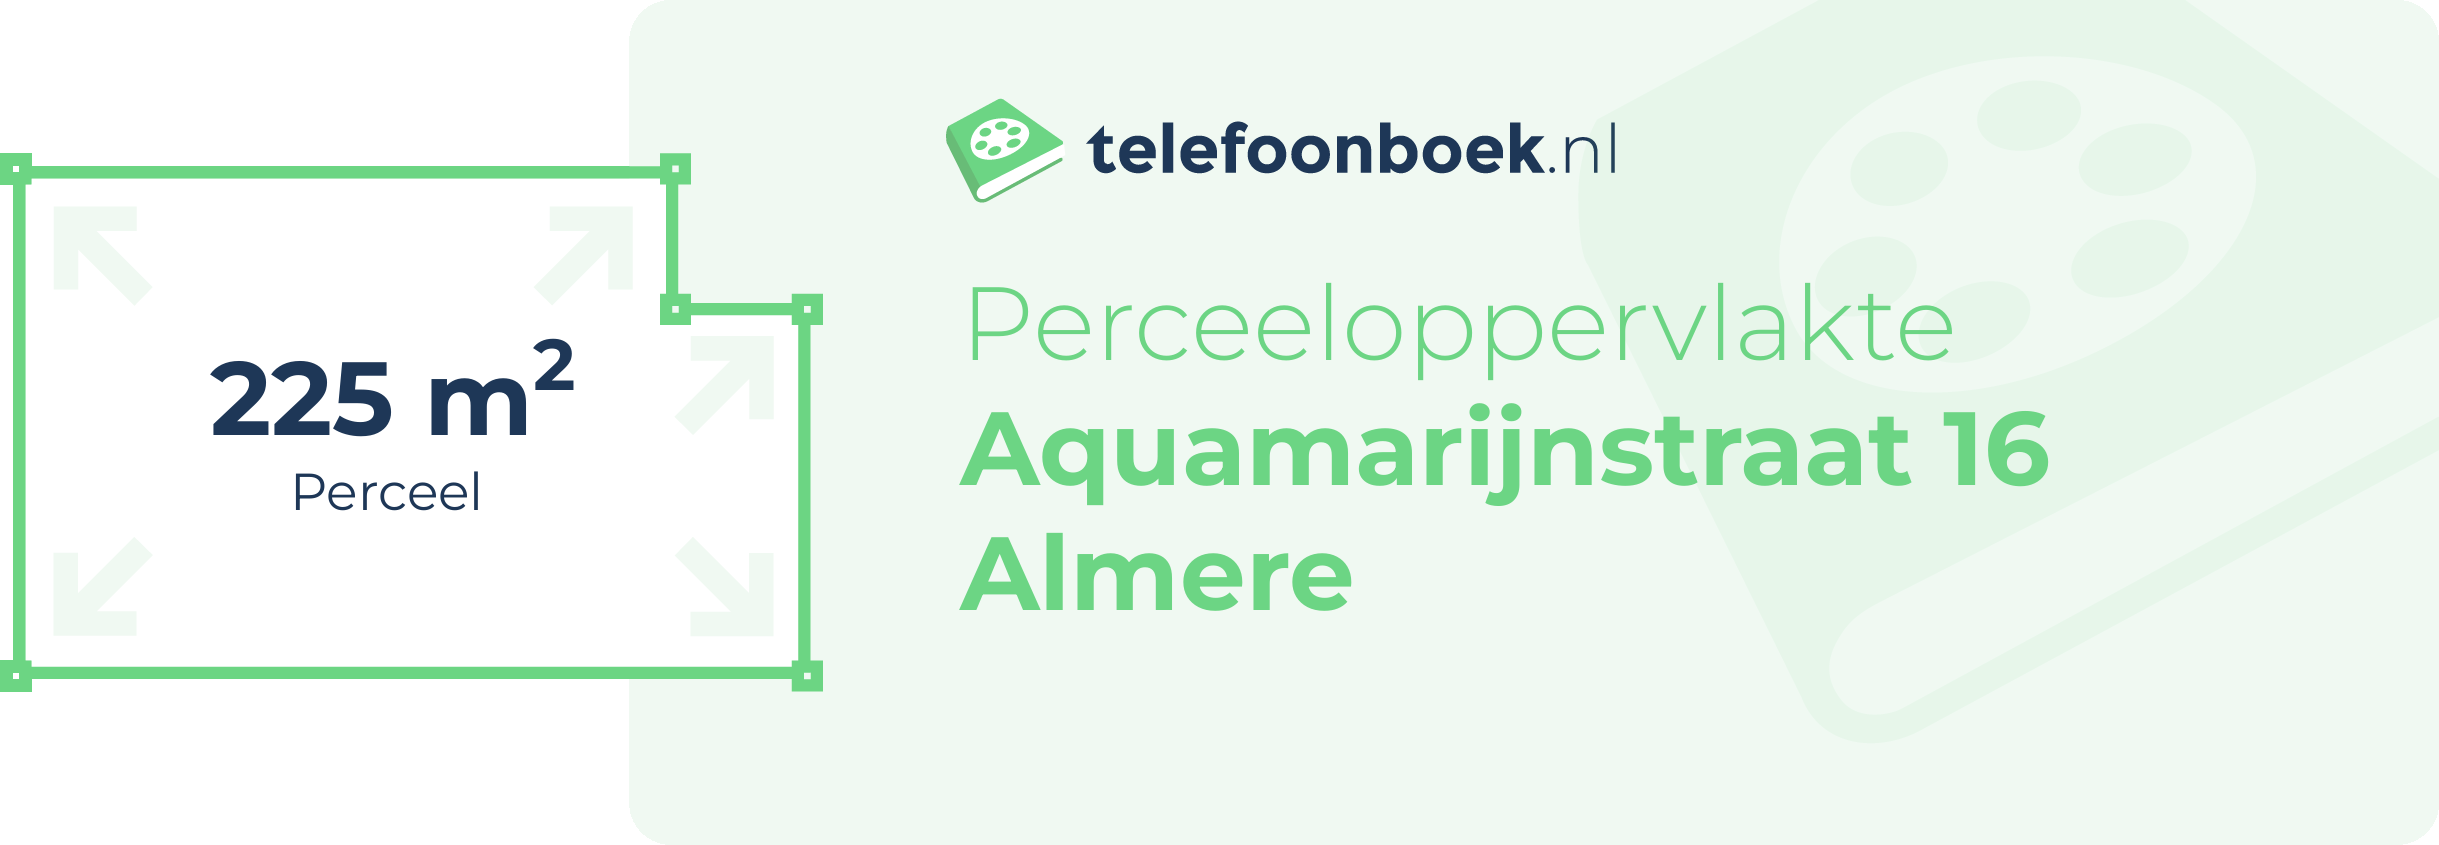 Perceeloppervlakte Aquamarijnstraat 16 Almere